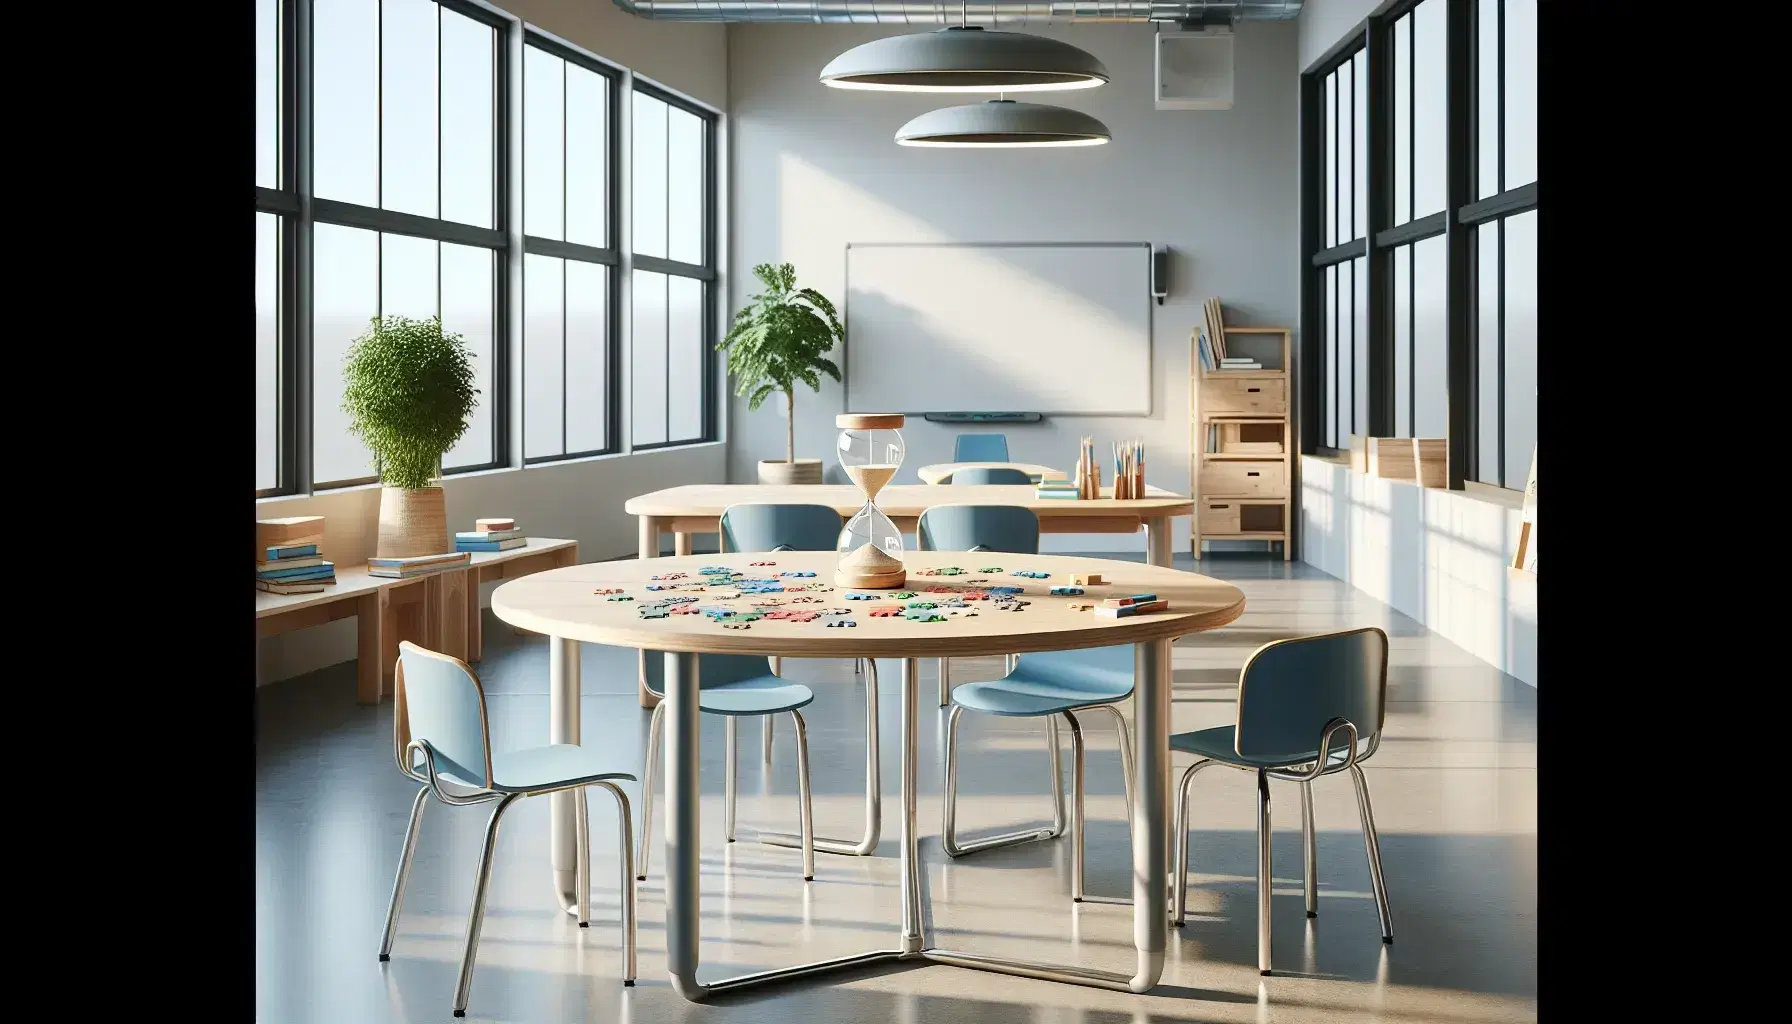 Aula moderna y luminosa con mesa de madera y rompecabezas parcialmente armado, sillas escolares azules, reloj de arena, pizarra blanca y planta verde.